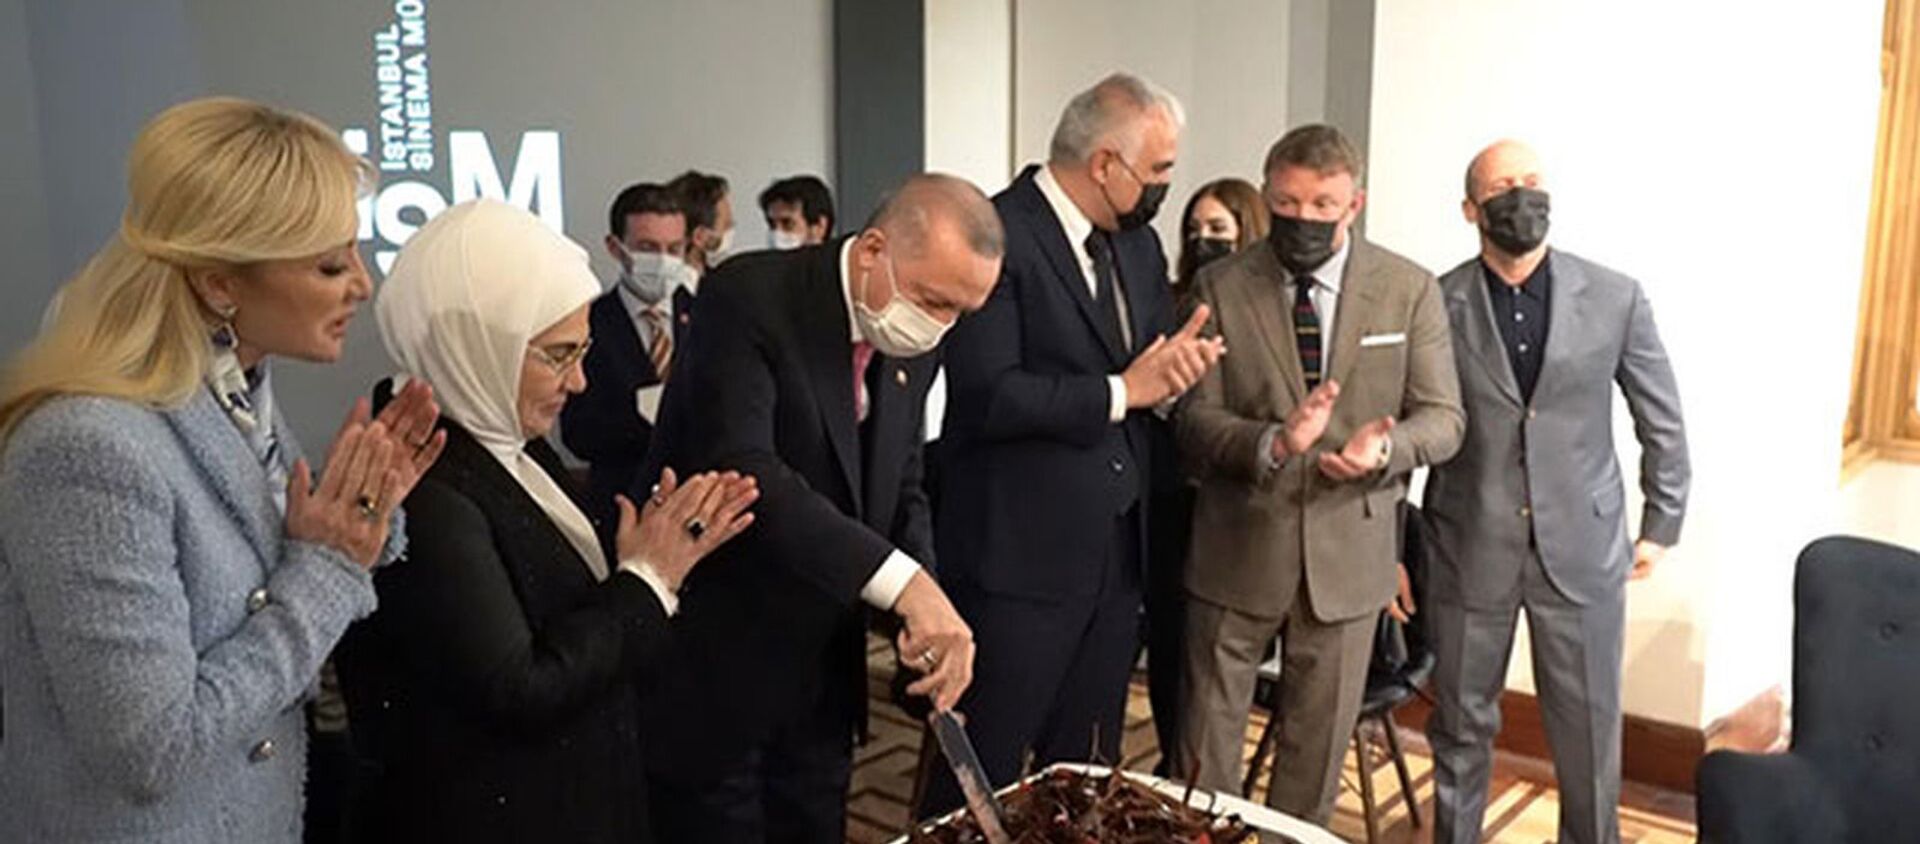 Cumhurbaşkanı Erdoğan'a Atlas 1948 Sinema Müzesi açılışında doğum günü pastası sürprizi - Sputnik Türkiye, 1920, 27.02.2021